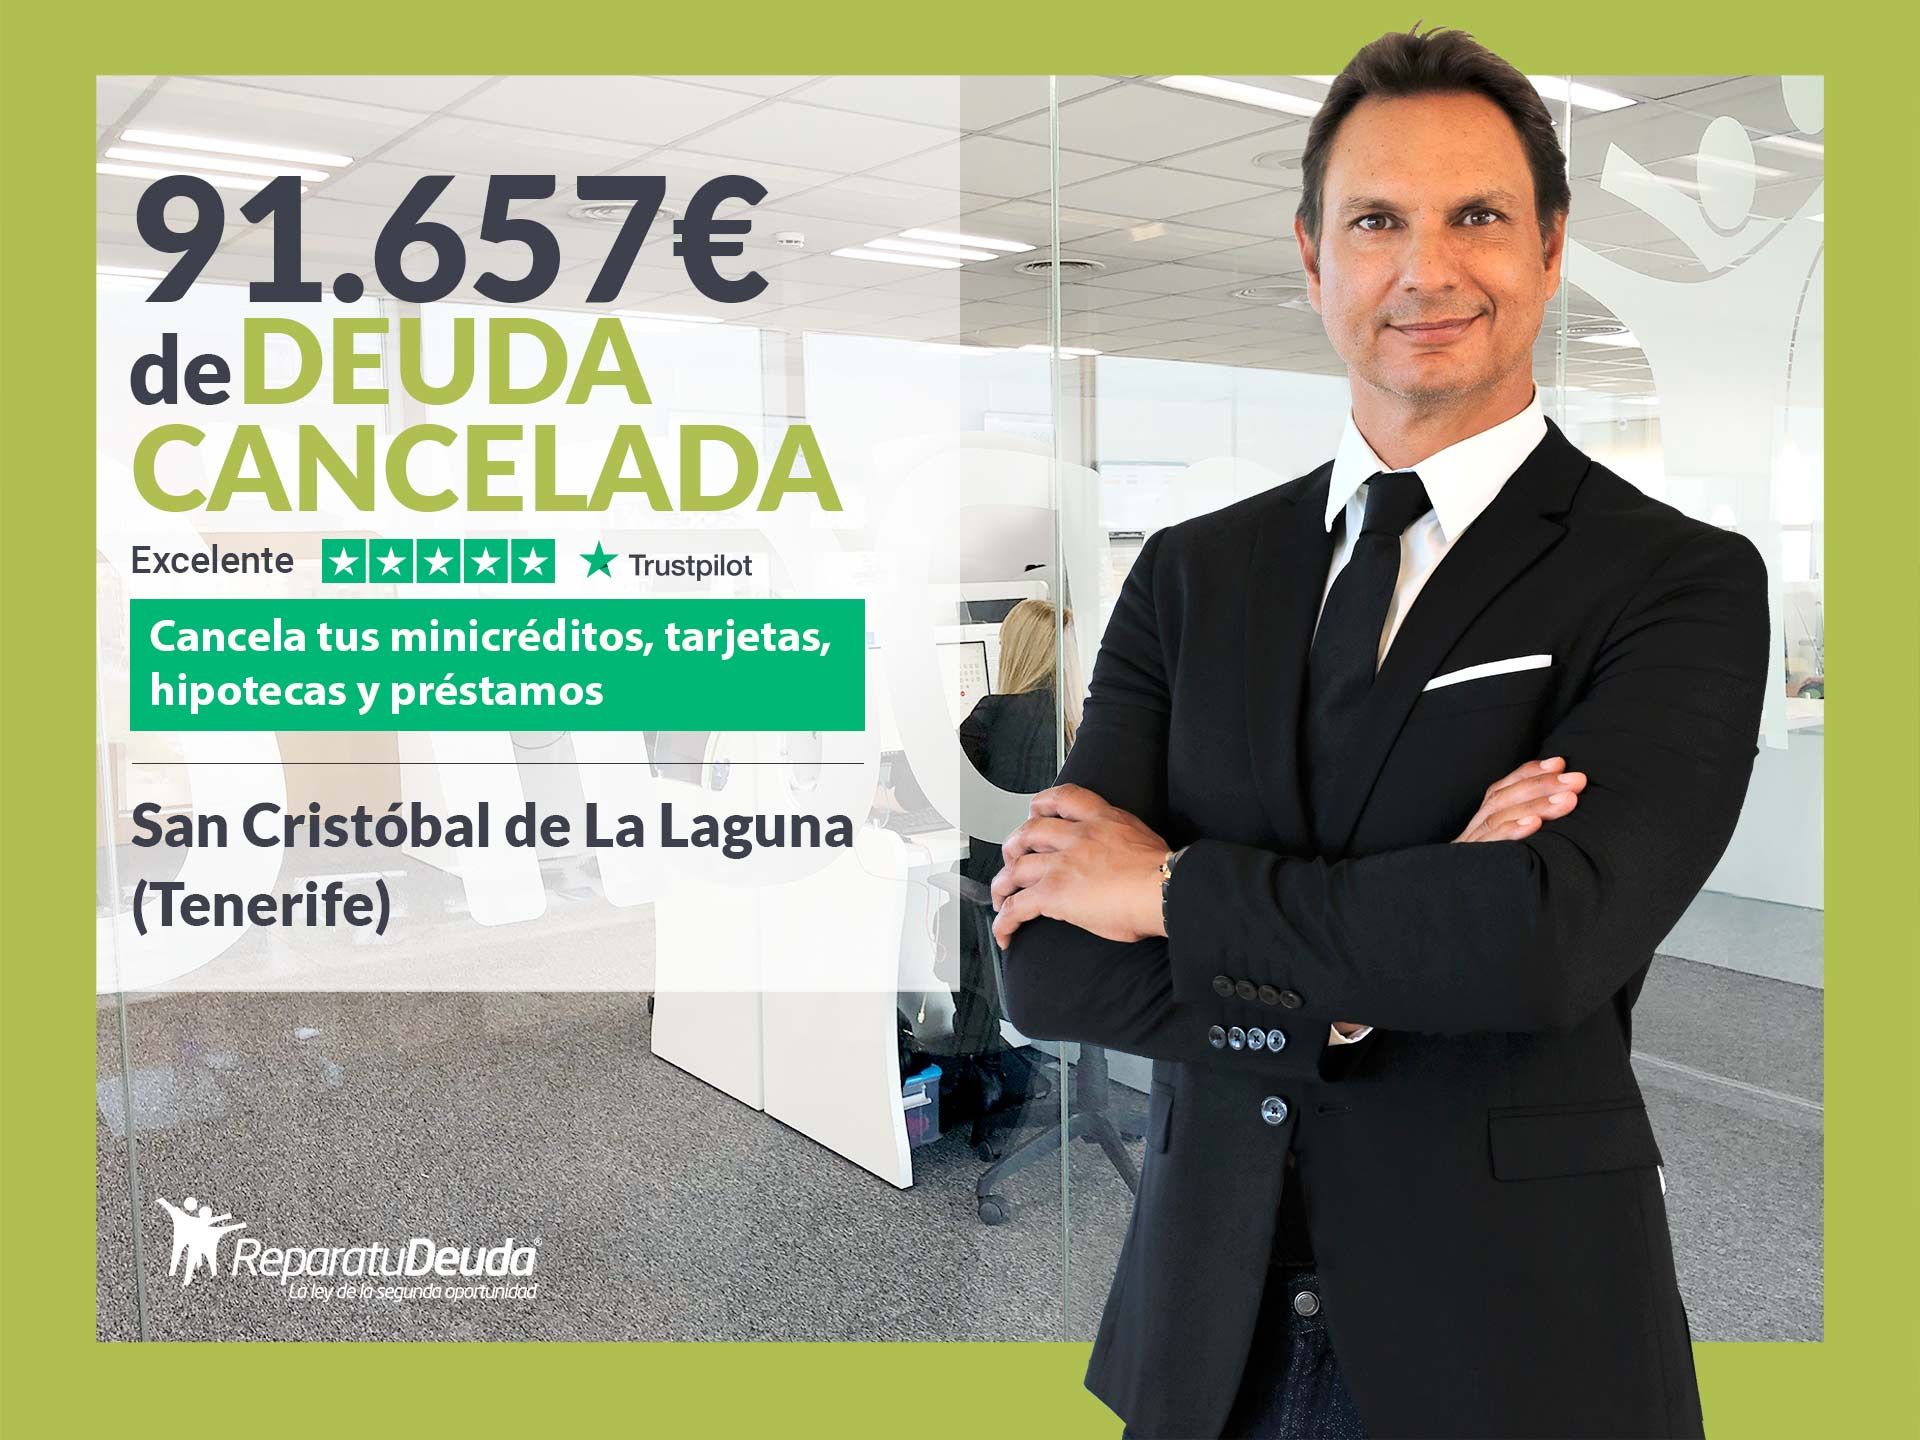 Repara tu Deuda Abogados cancela 91.657? en La Laguna (Tenerife) con la Ley de Segunda Oportunidad